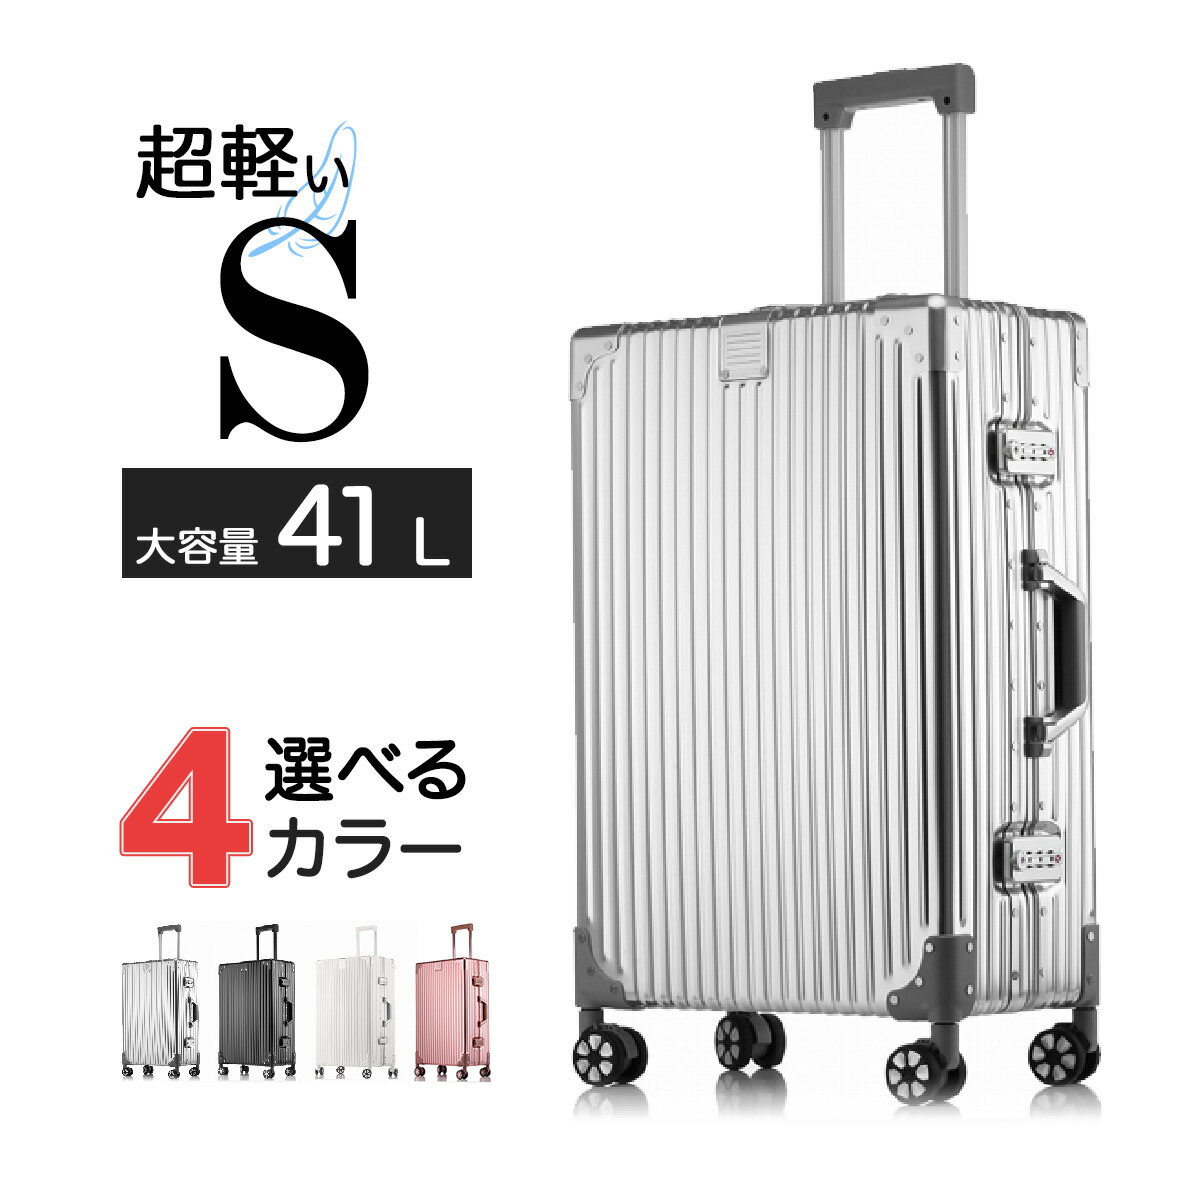  スーツケース キャリーバッグ キャリーケース 旅行カバン 軽量 大型 大容量 フレーム 静音キャスター